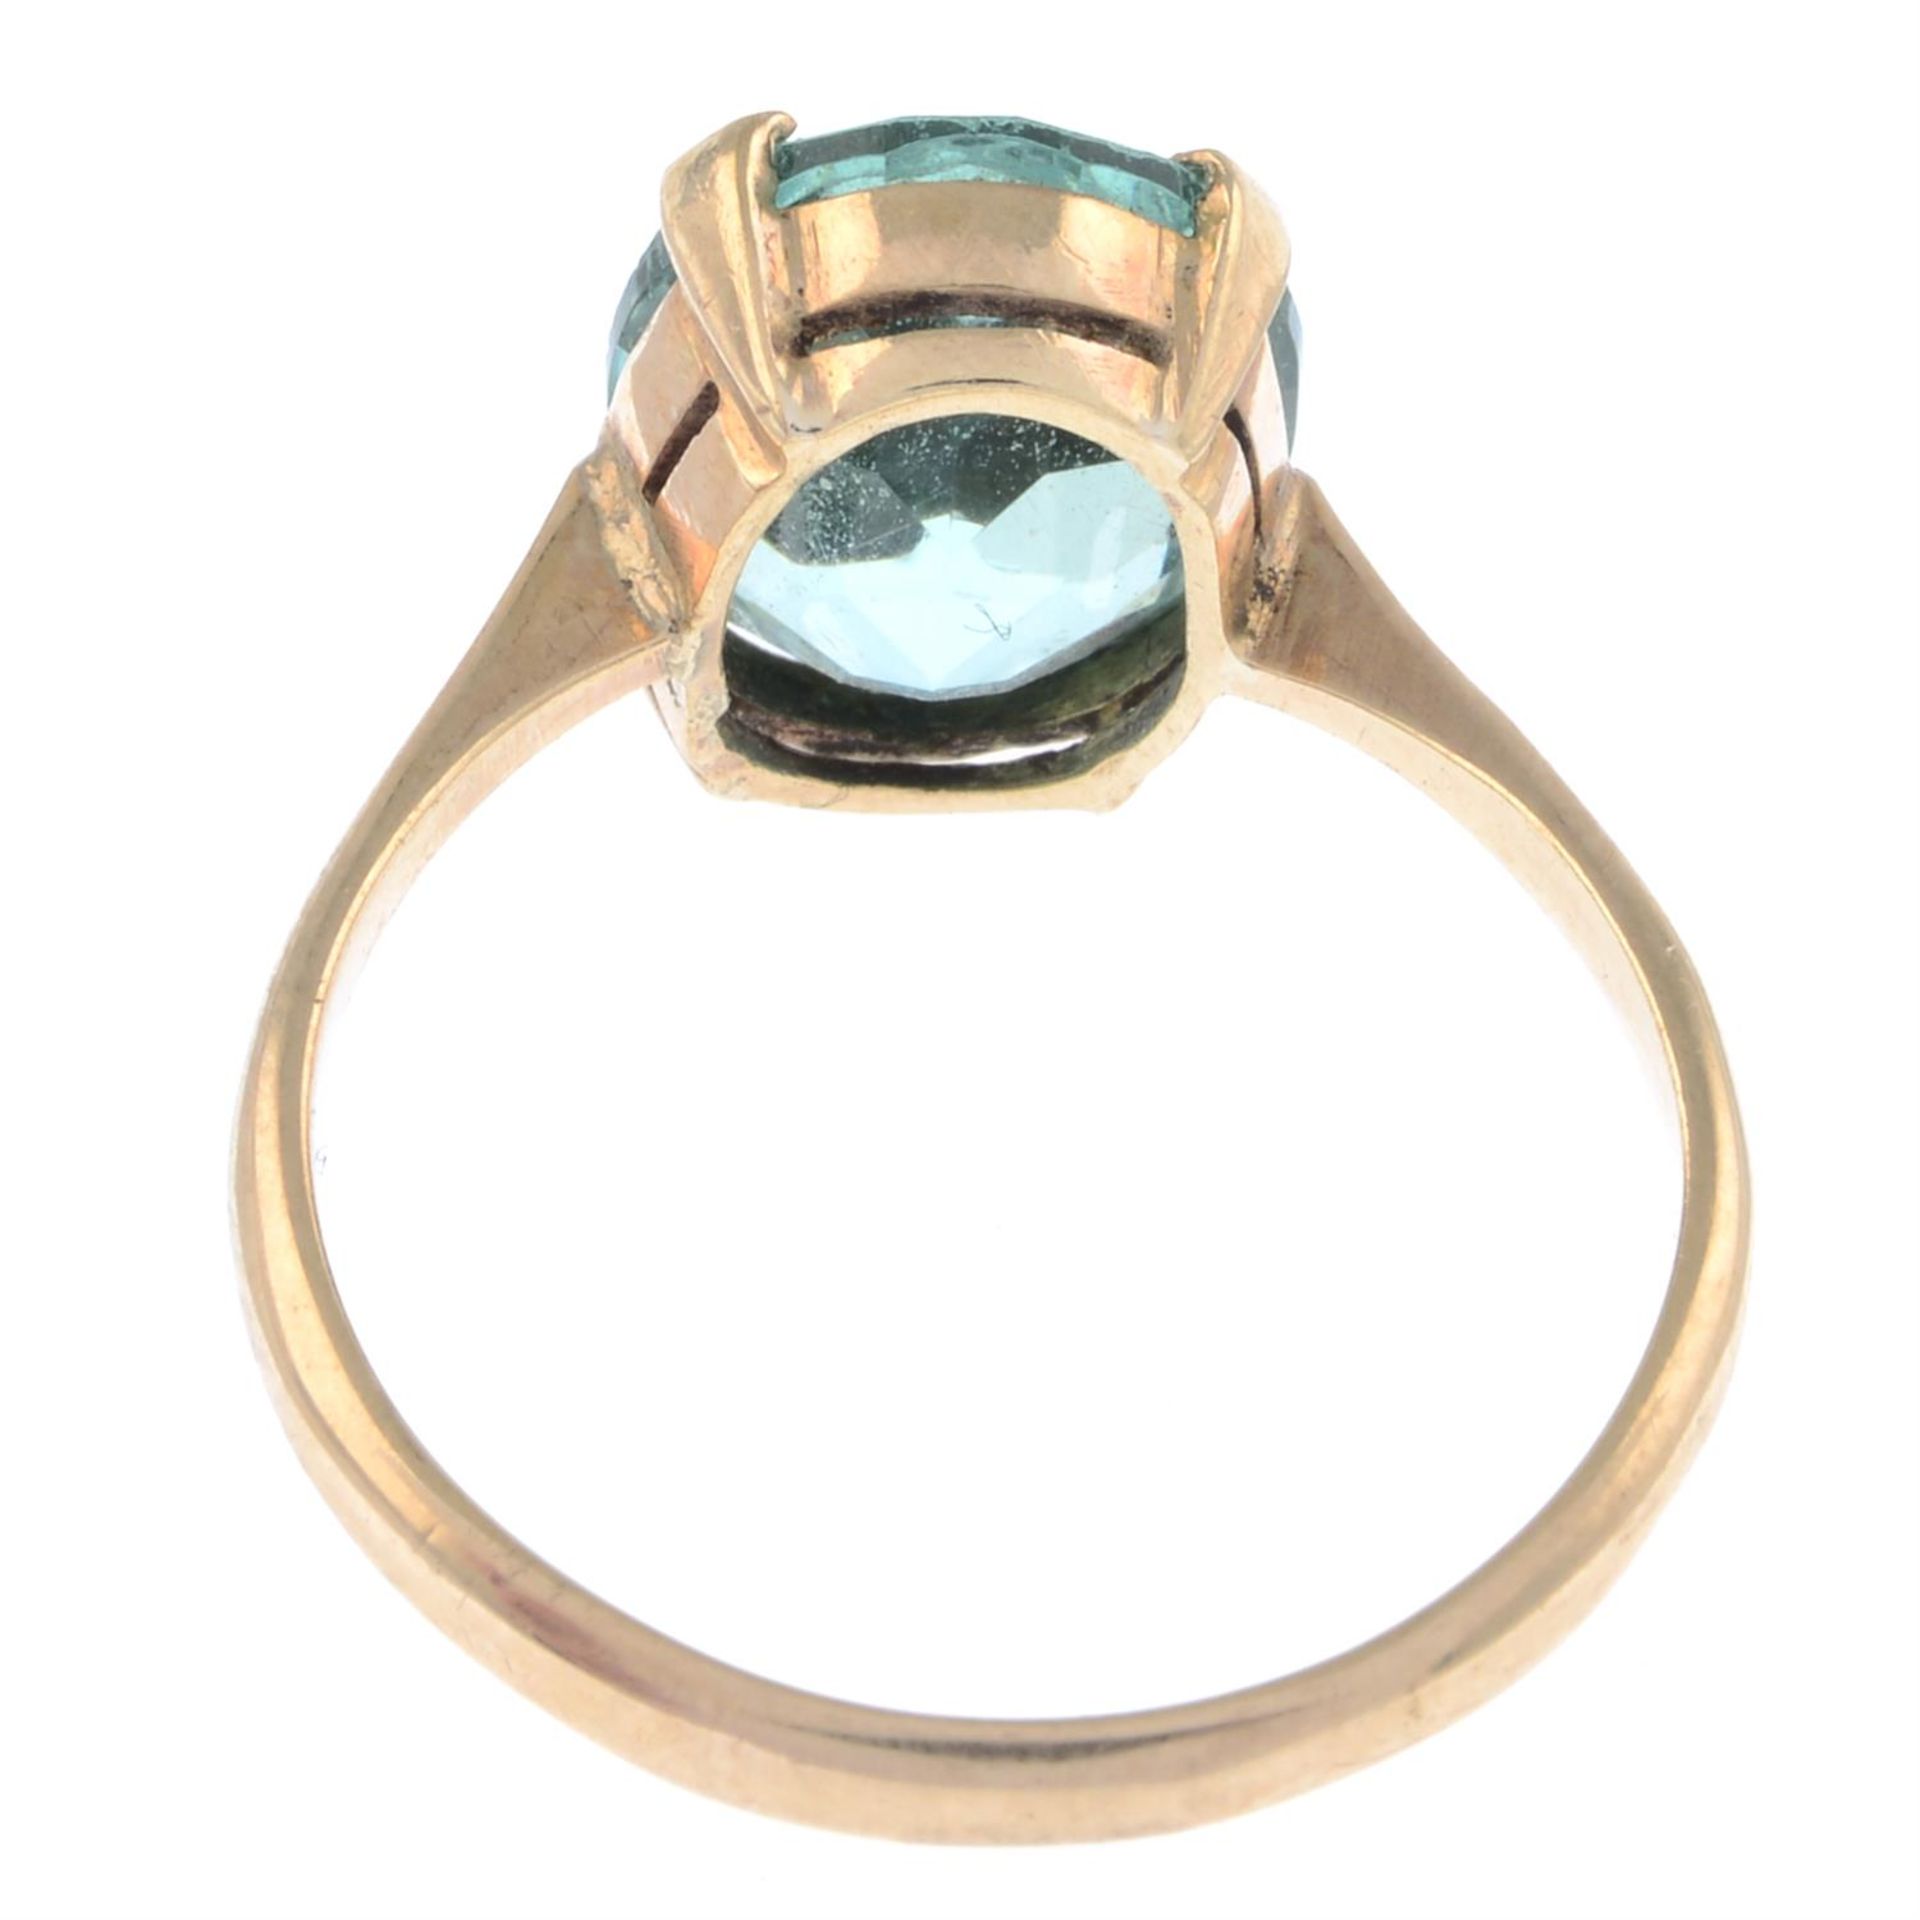 Blue paste single-stone ring - Image 2 of 2